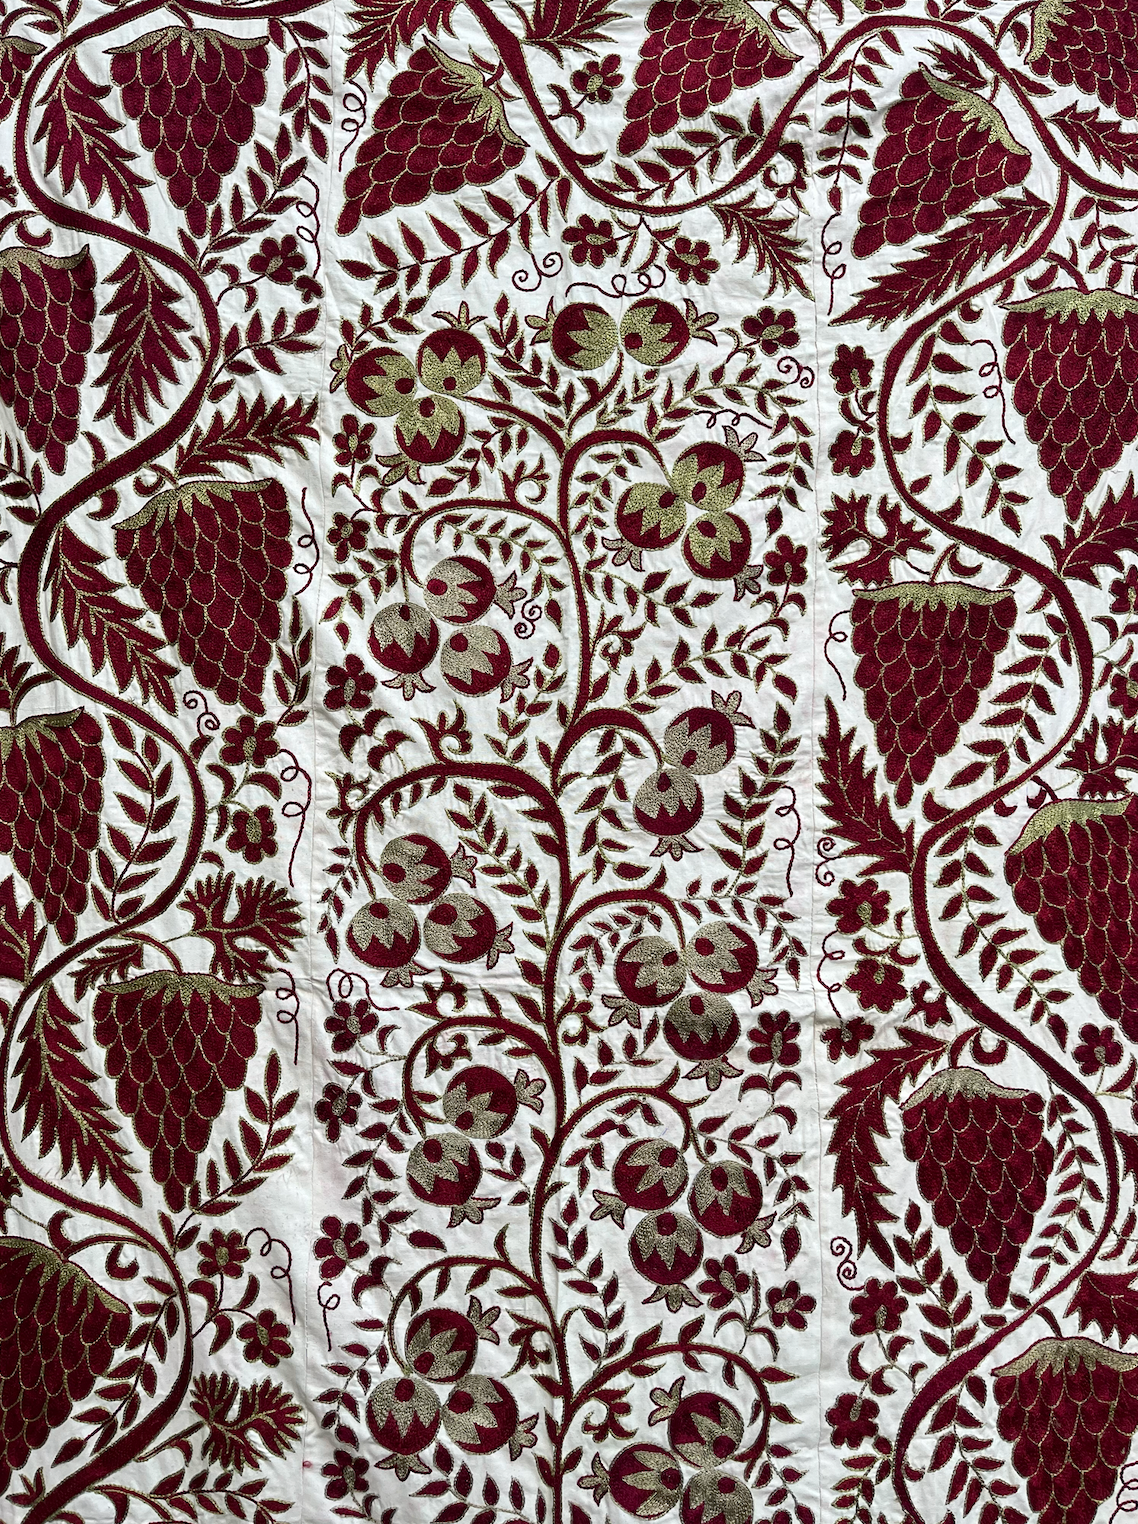 Quirky & Cool Bright Raspberry Design Cotton Suzani Fabric